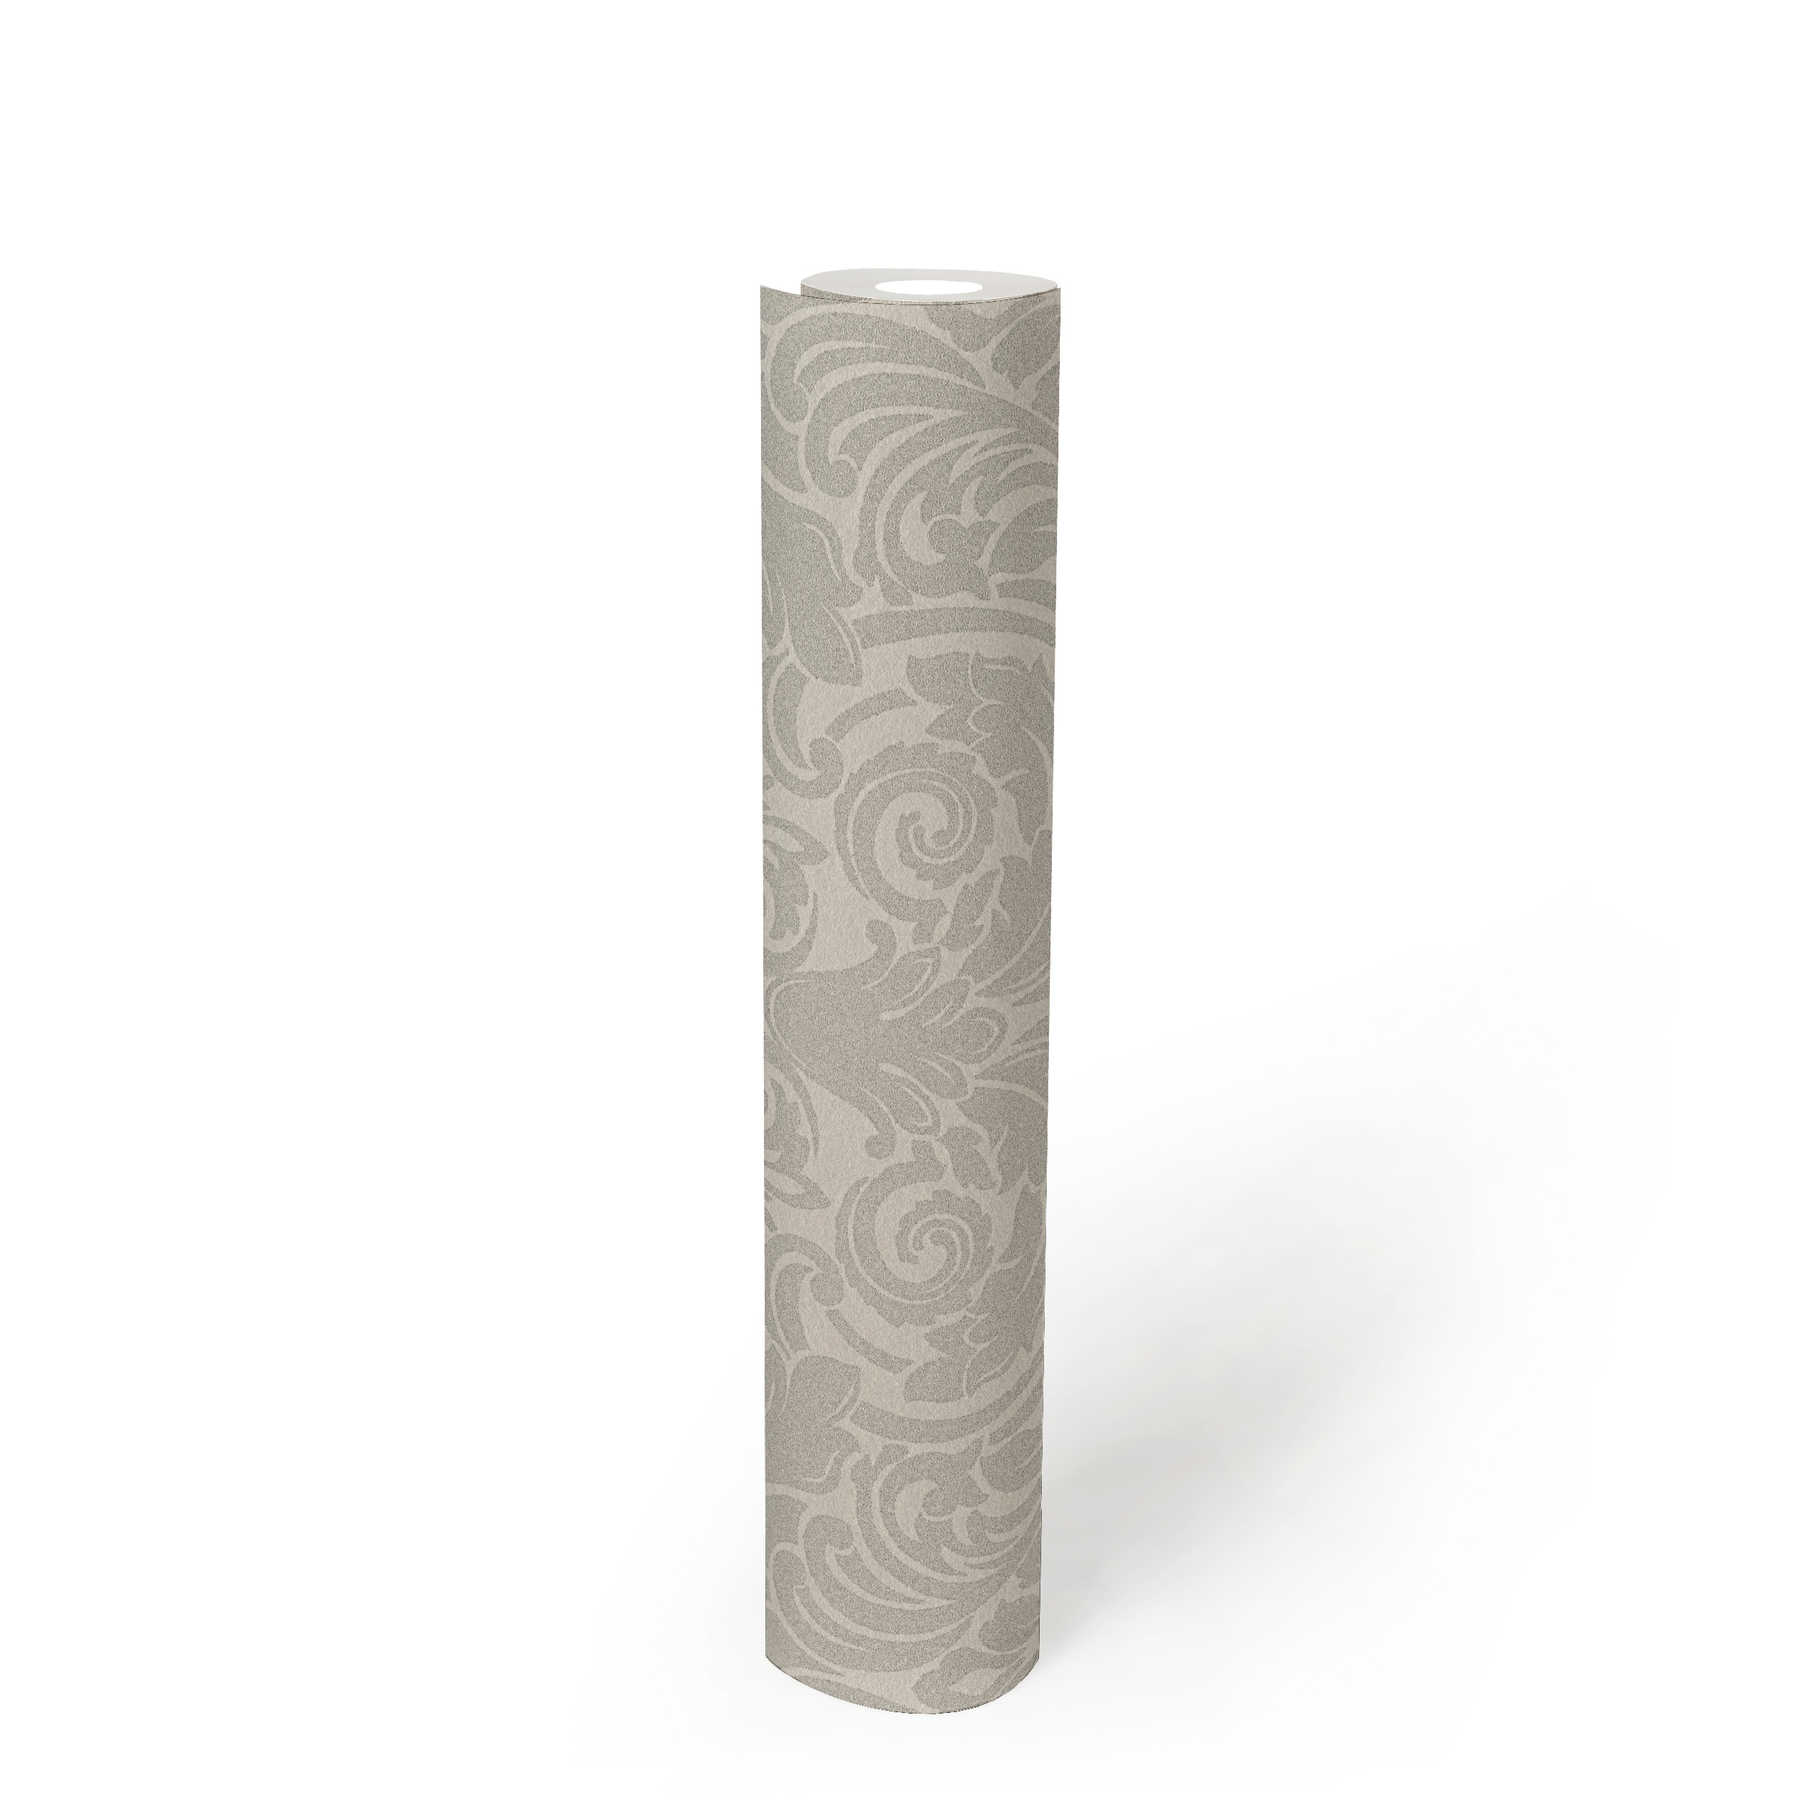             Papier peint ornemental à effet métallique et motif floral - argent, crème
        